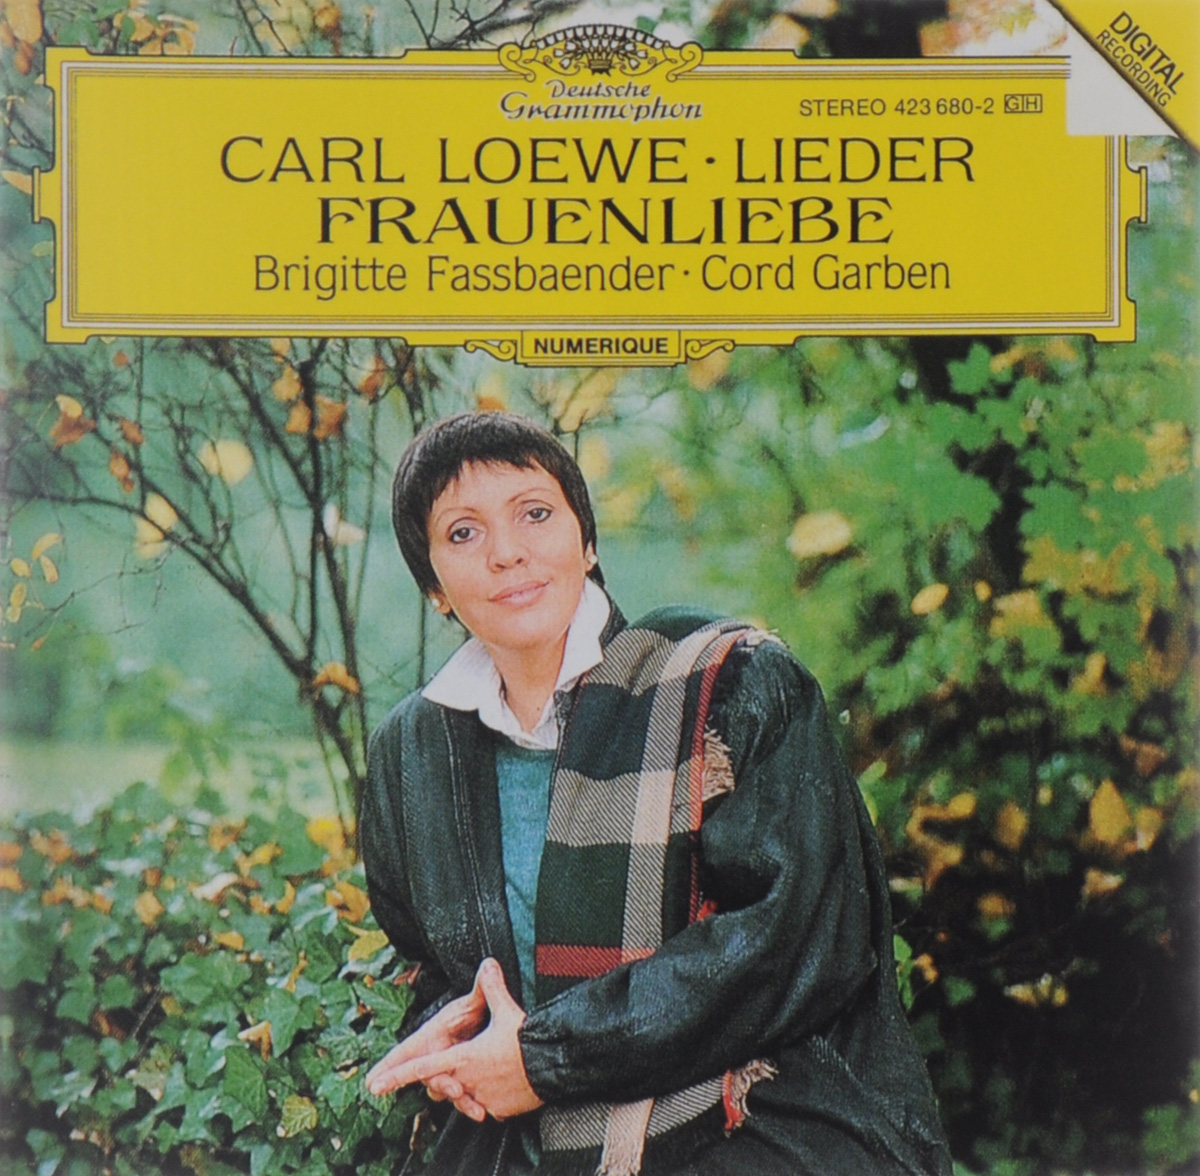 Brigitte Fassbaender. Cord Garben. Carl Loewe. Lieder / Frauenliebe